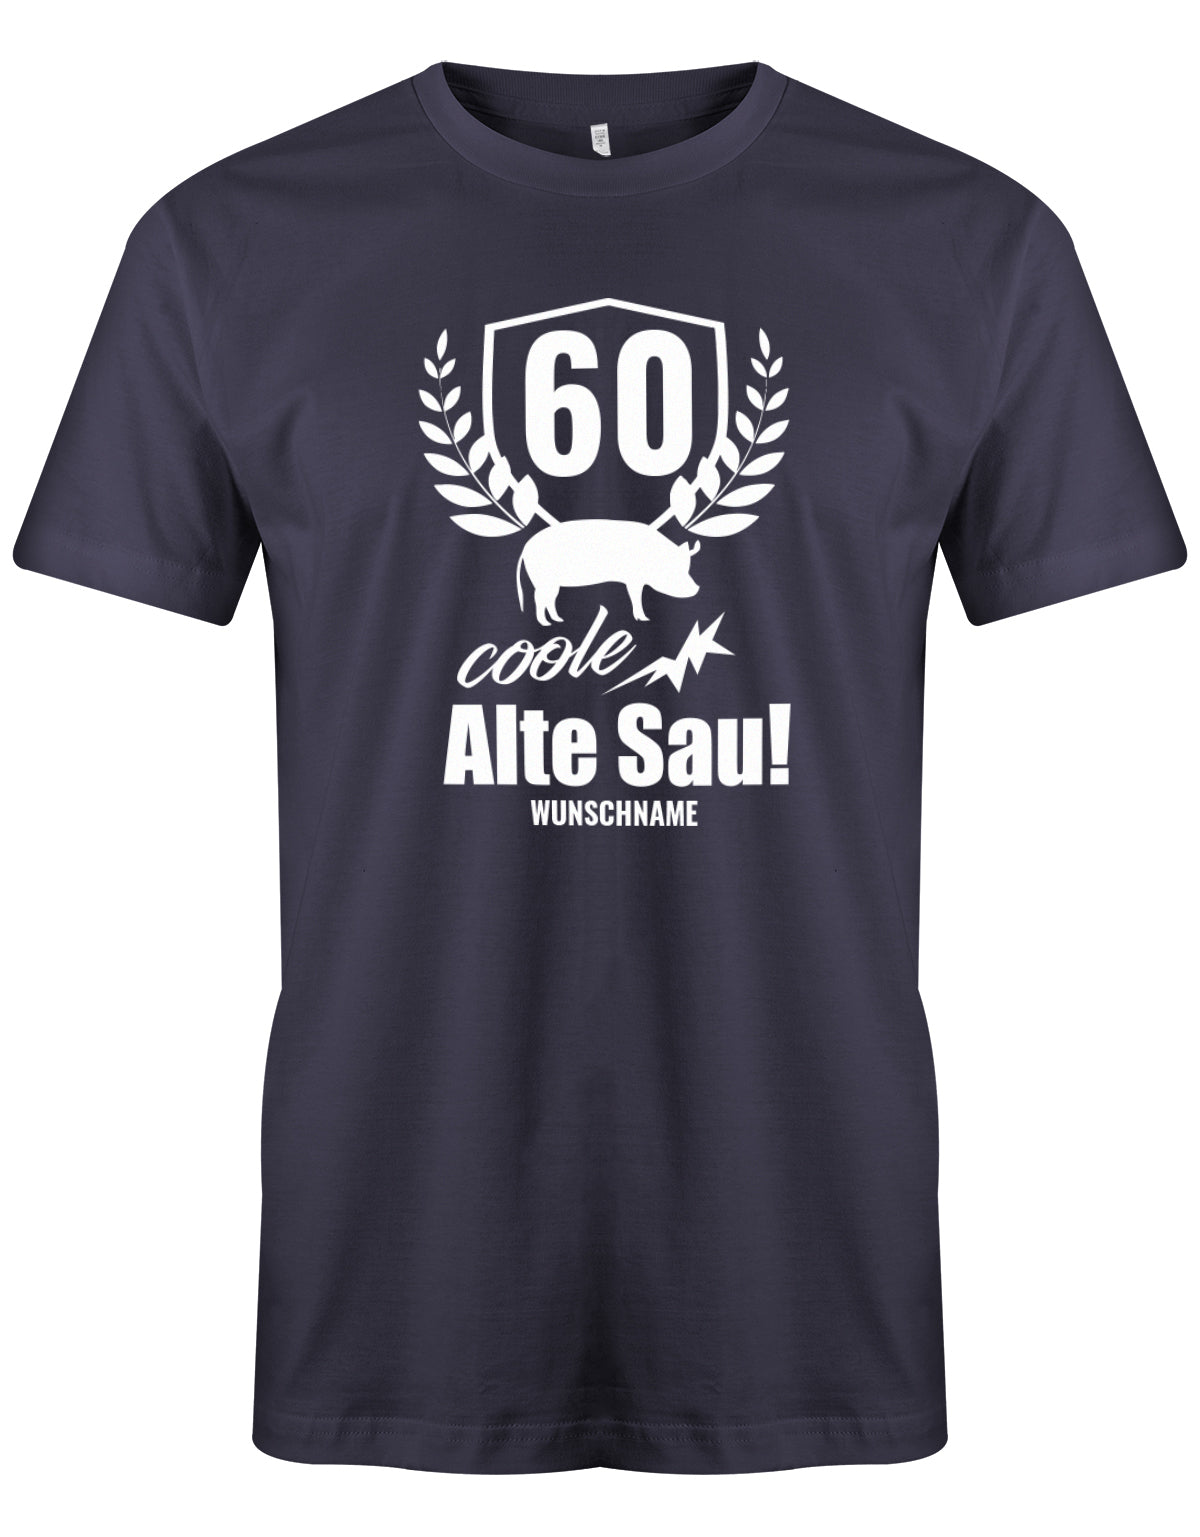 Lustiges T-Shirt zum 60. Geburtstag für den Mann Bedruckt mit 60 coole Alte Sau! mit Wunschname. Navy